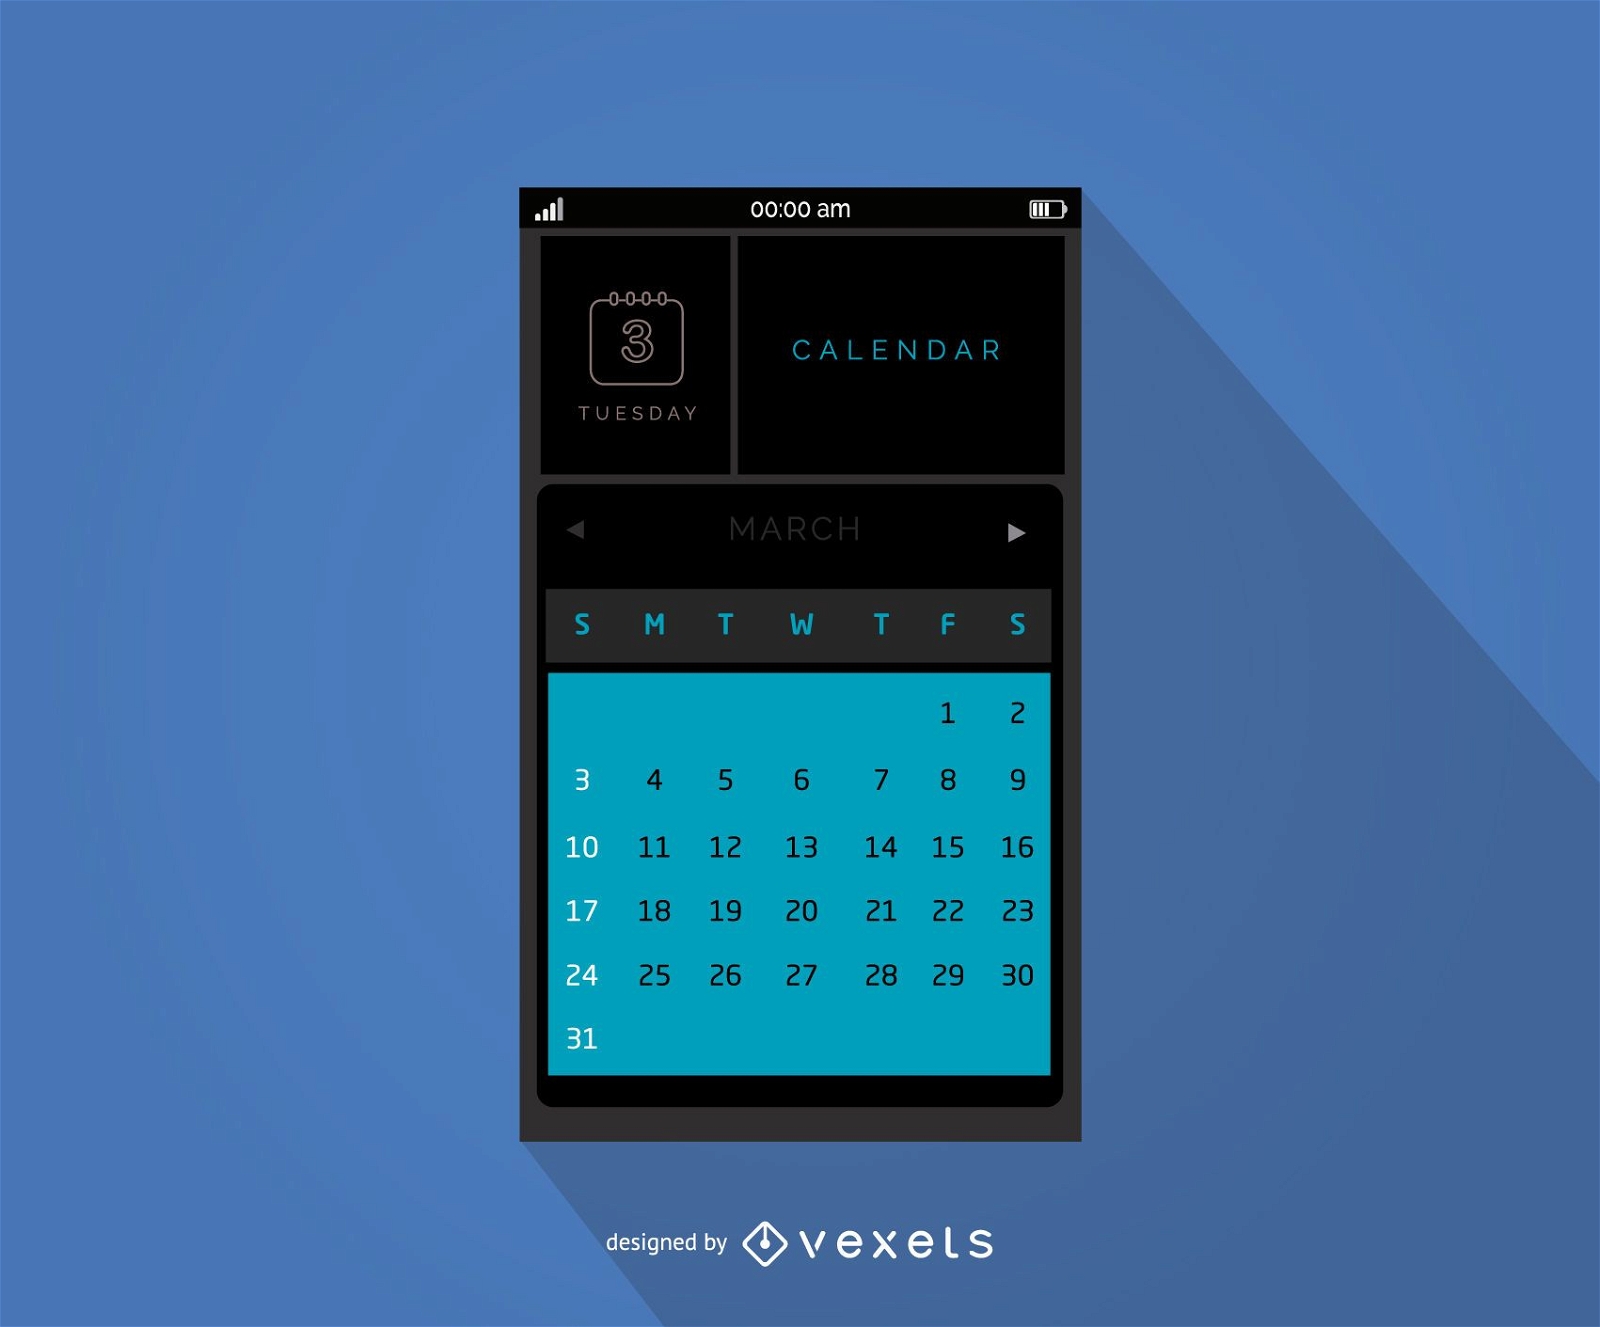 Mobile calendar interface design